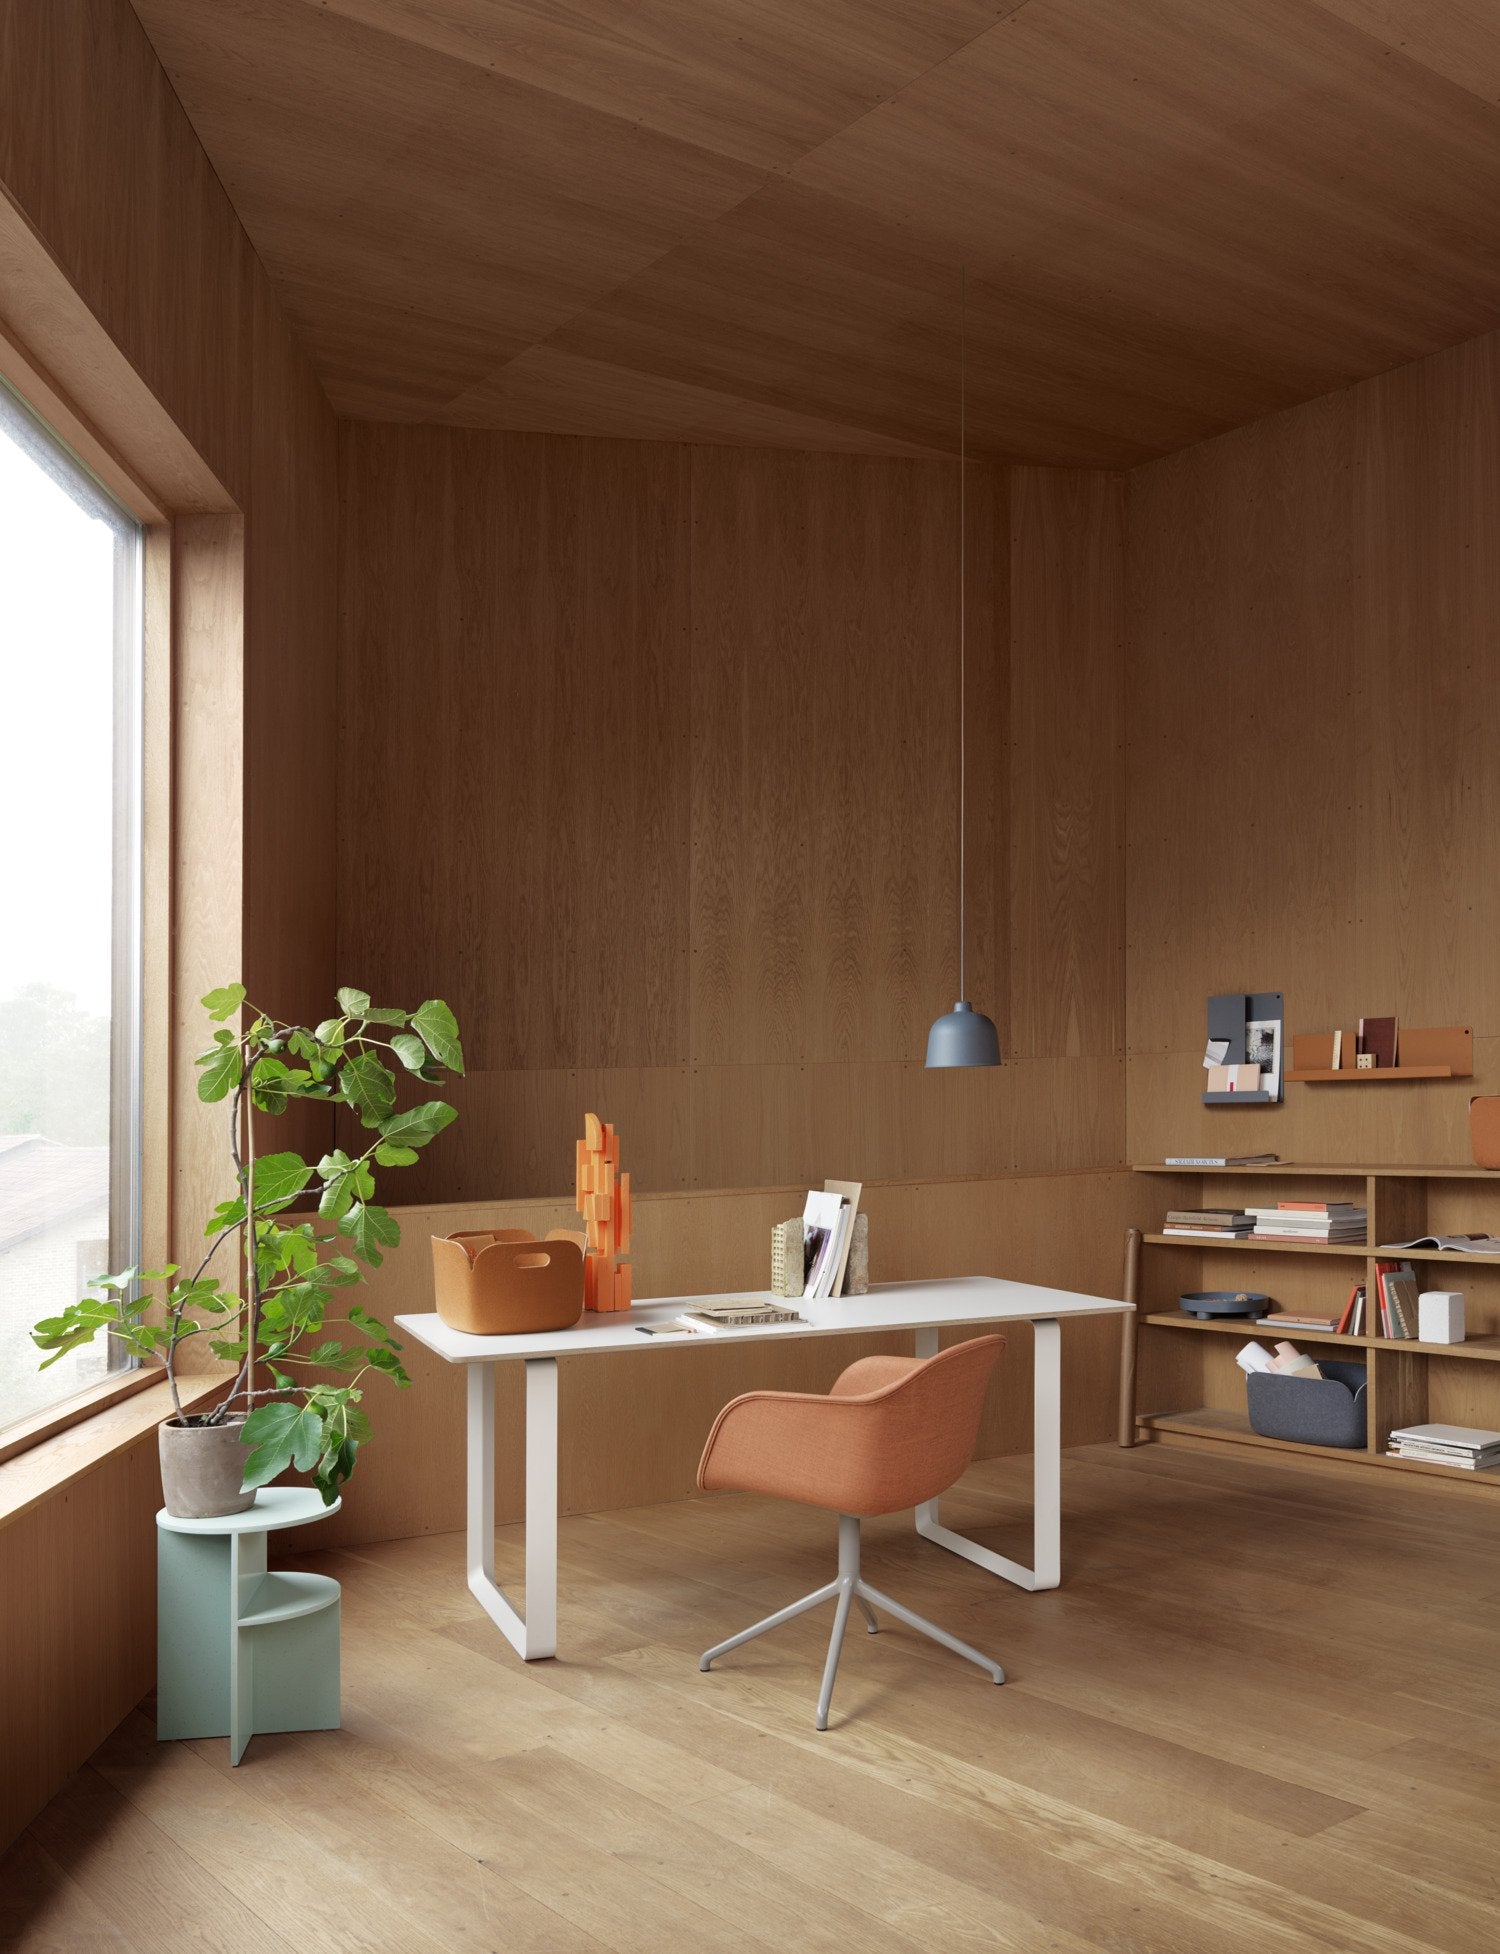 70/70 Tisch in Weiss / Sand präsentiert im Onlineshop von KAQTU Design AG. Esstisch ist von Muuto